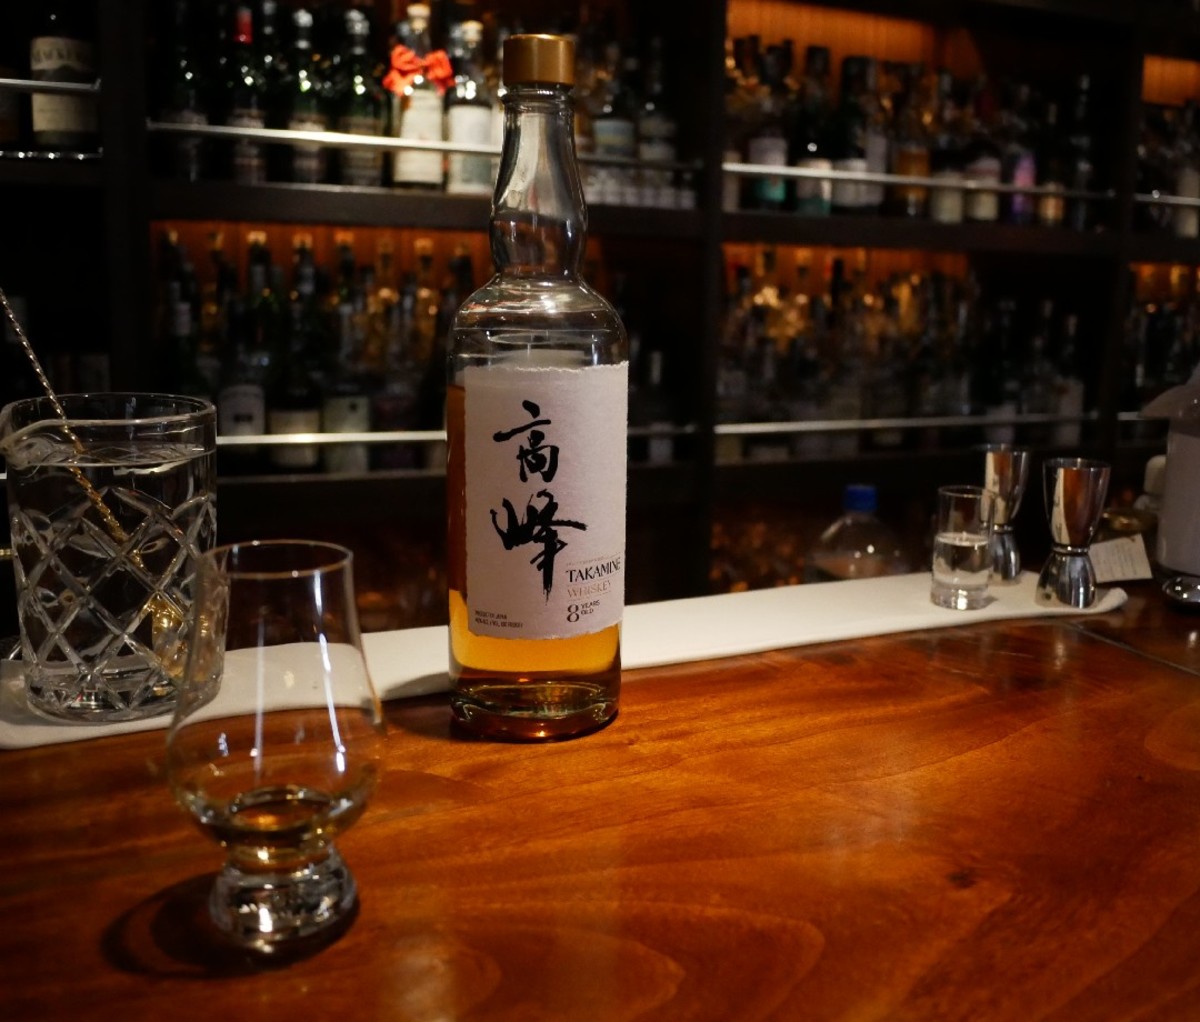 Bottle of Takamine Japanese whisky